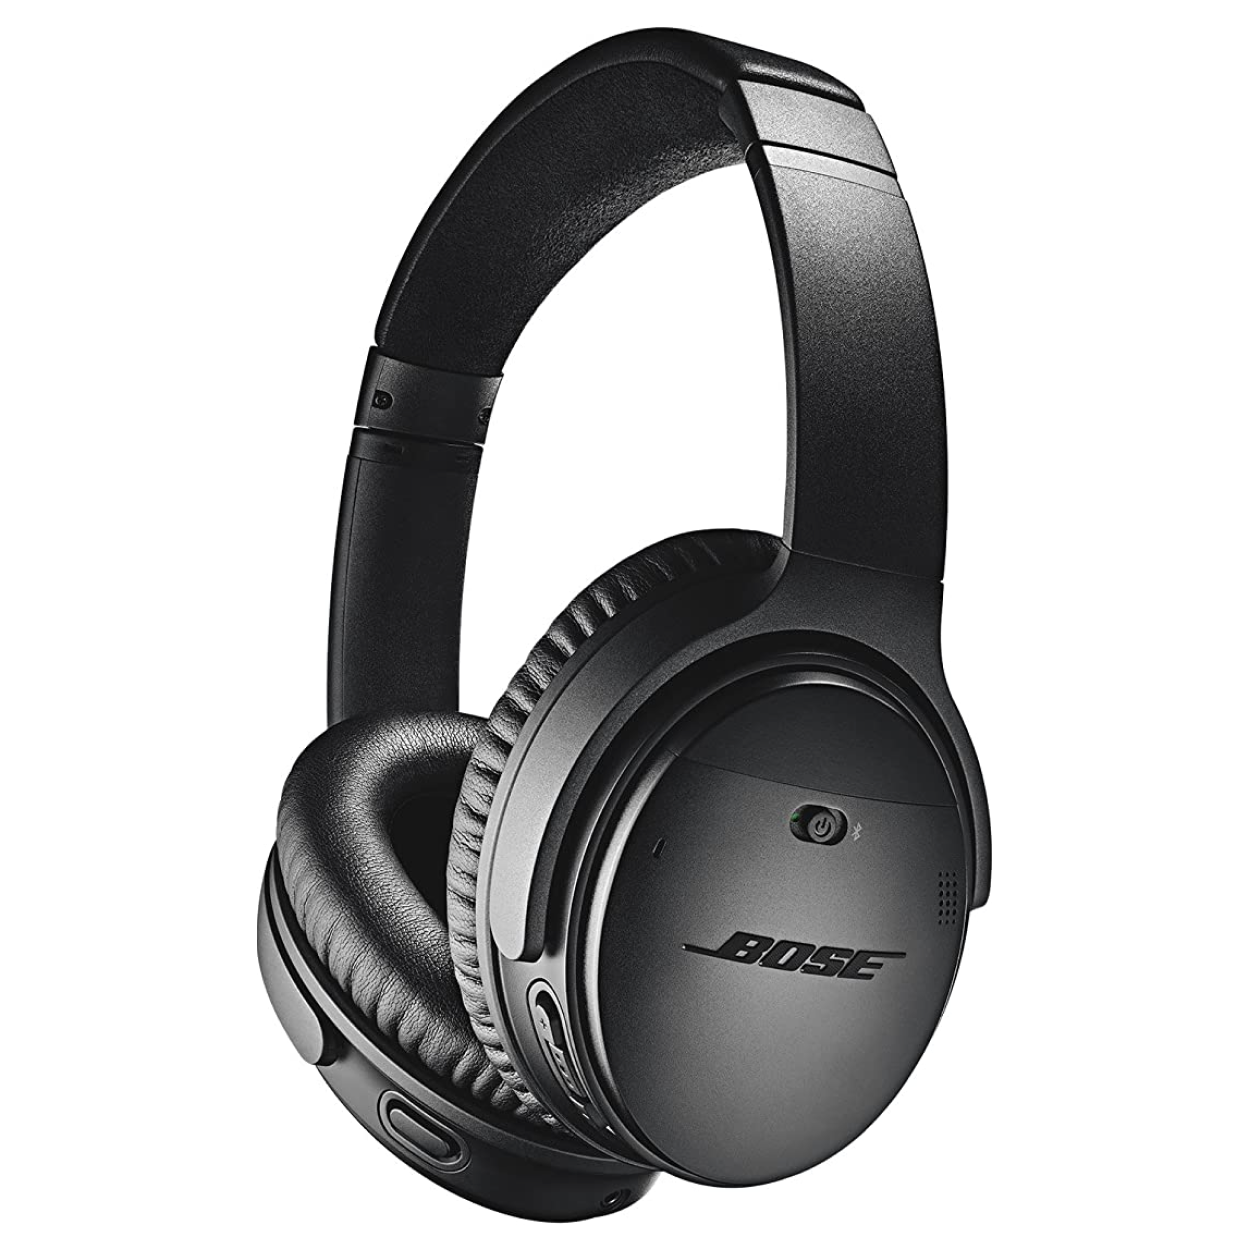 Bose Quiet Comfort Headphones in Black